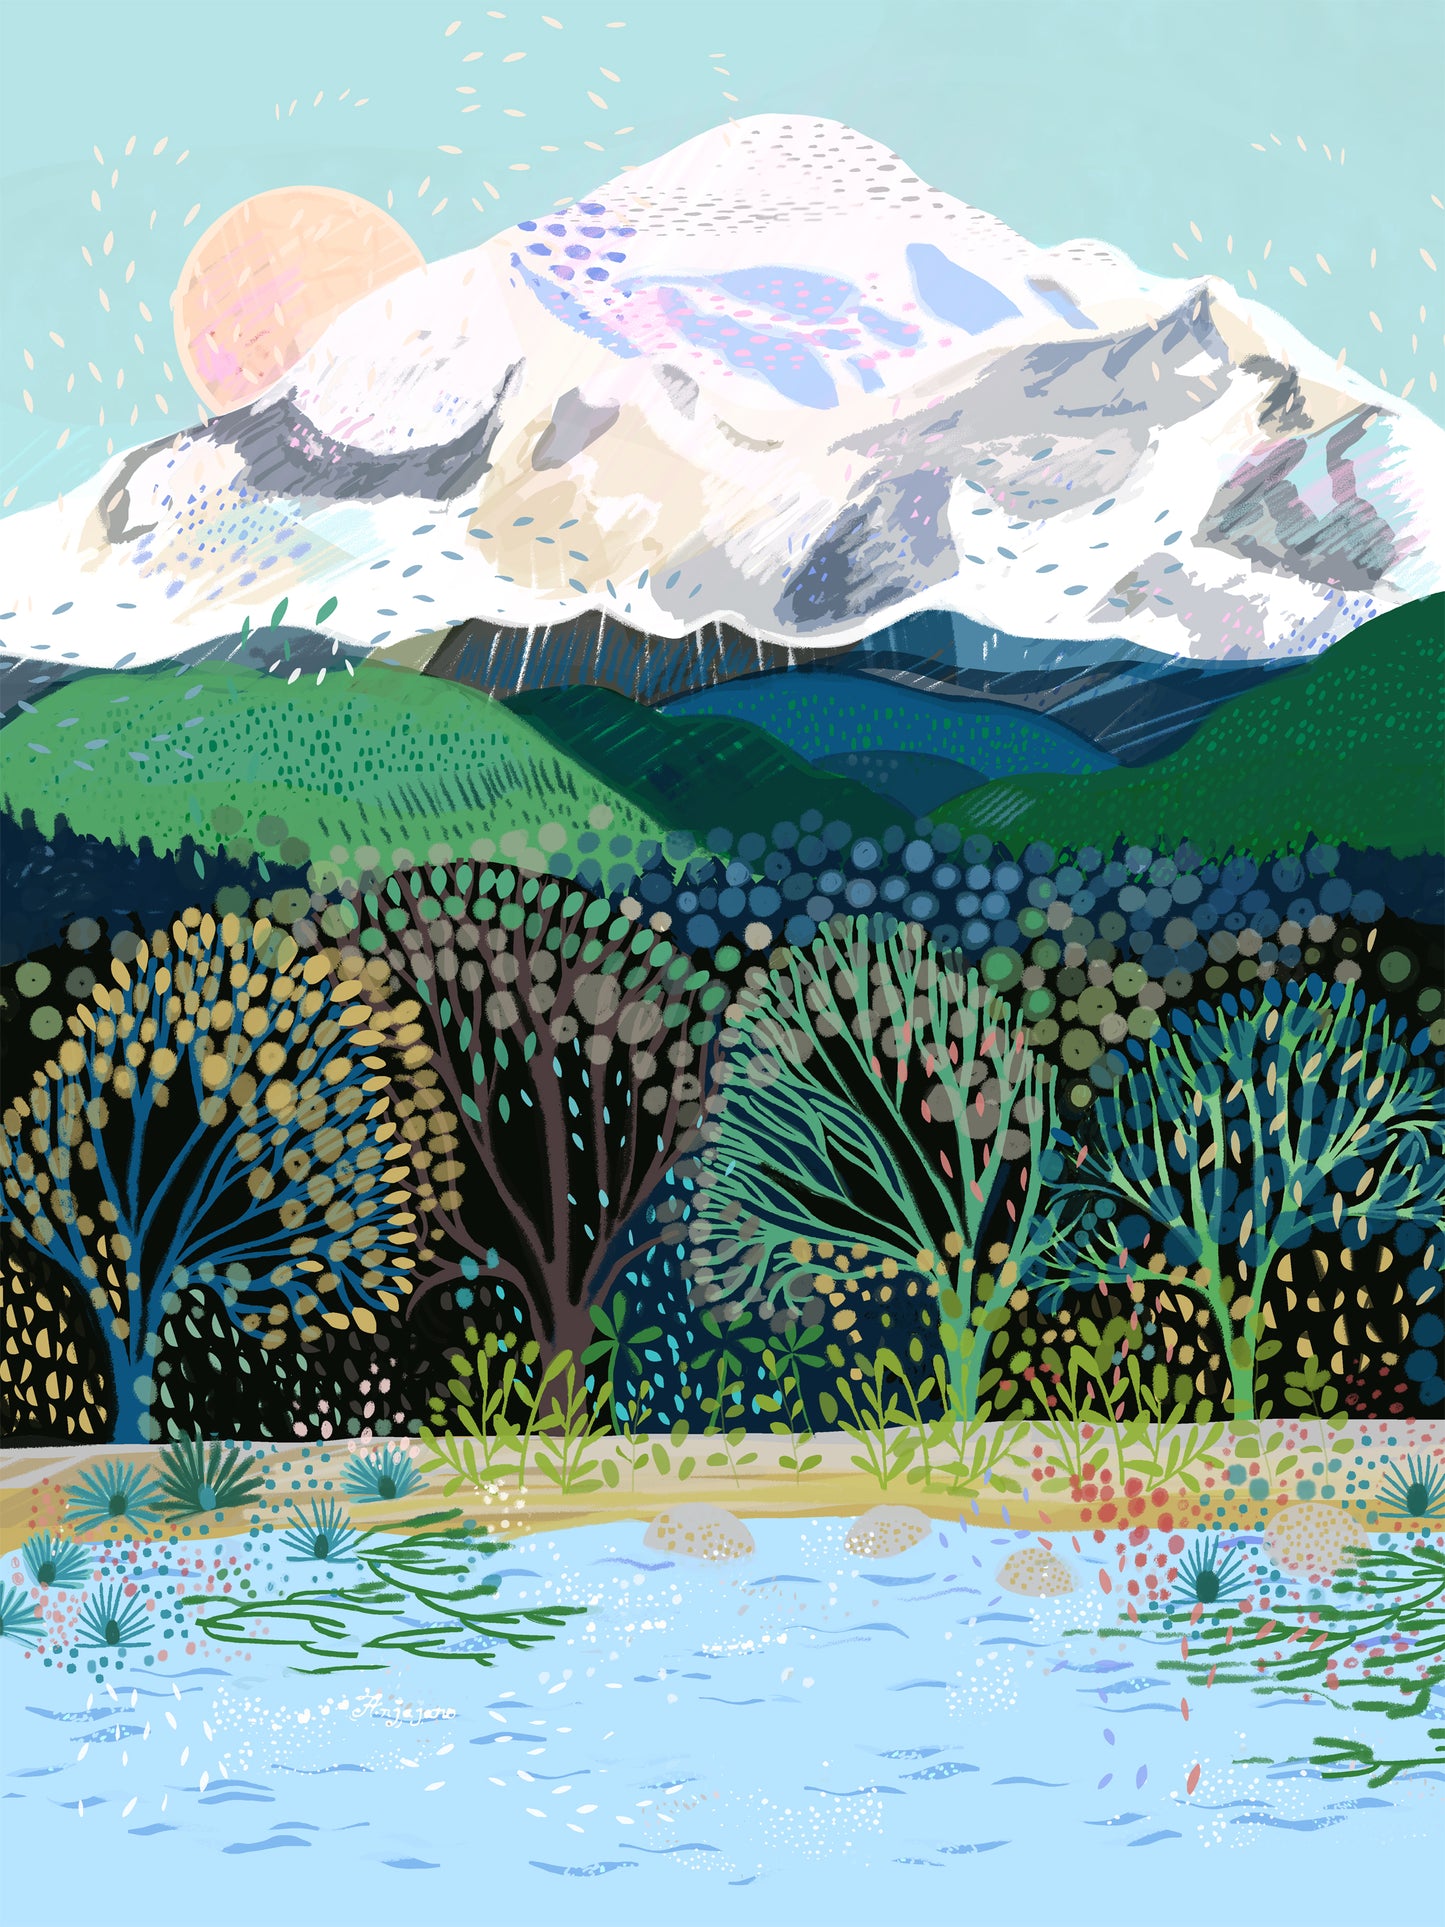 Mount Baker Art Print